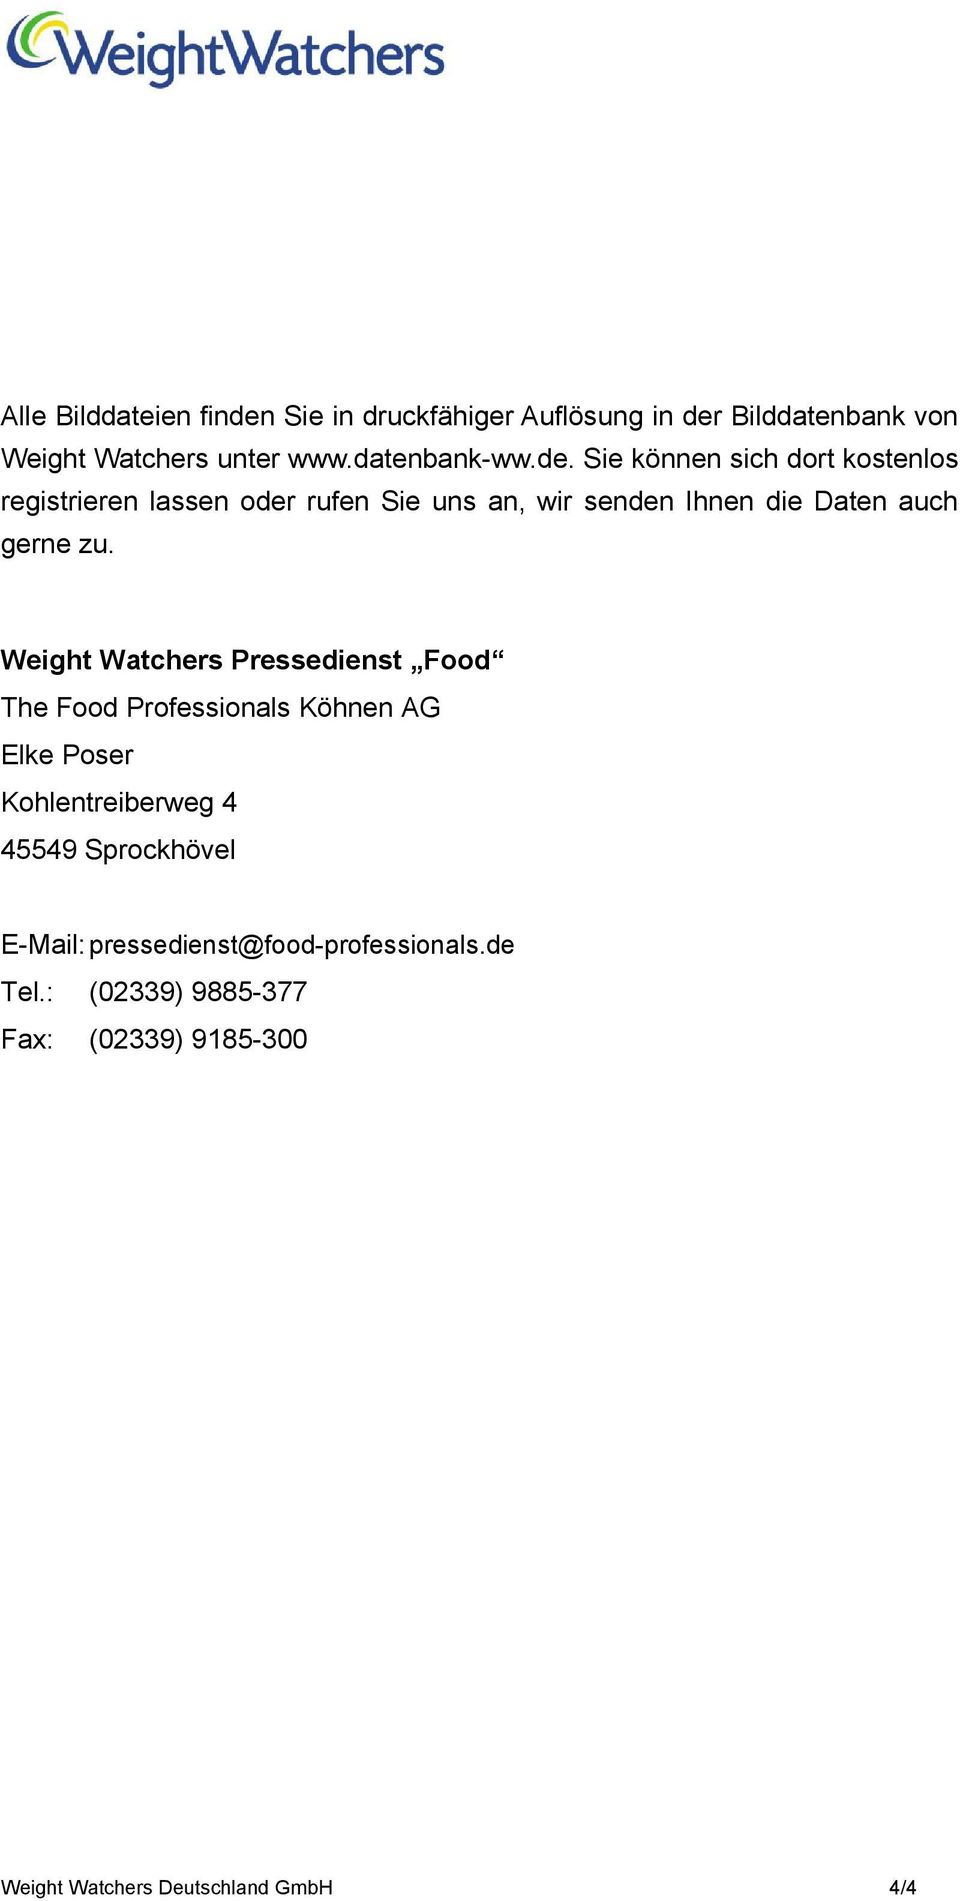 Weight Watchers Pressedienst Food The Food Professionals Köhnen AG Elke Poser Kohlentreiberweg 4 45549 Sprockhövel